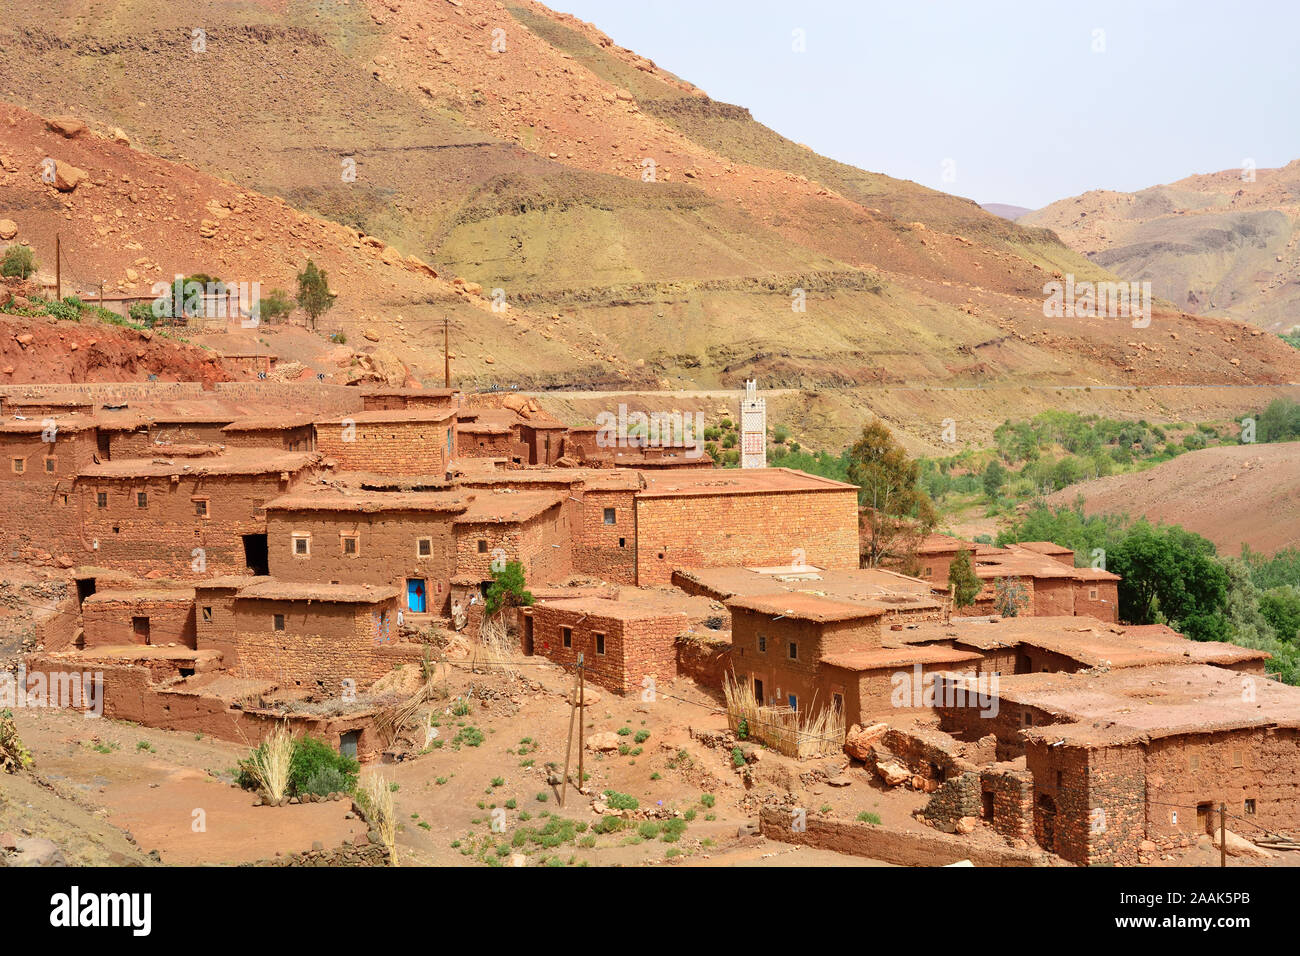 Villaggio Tradizionale in Alto Atlante. Il Marocco Foto Stock